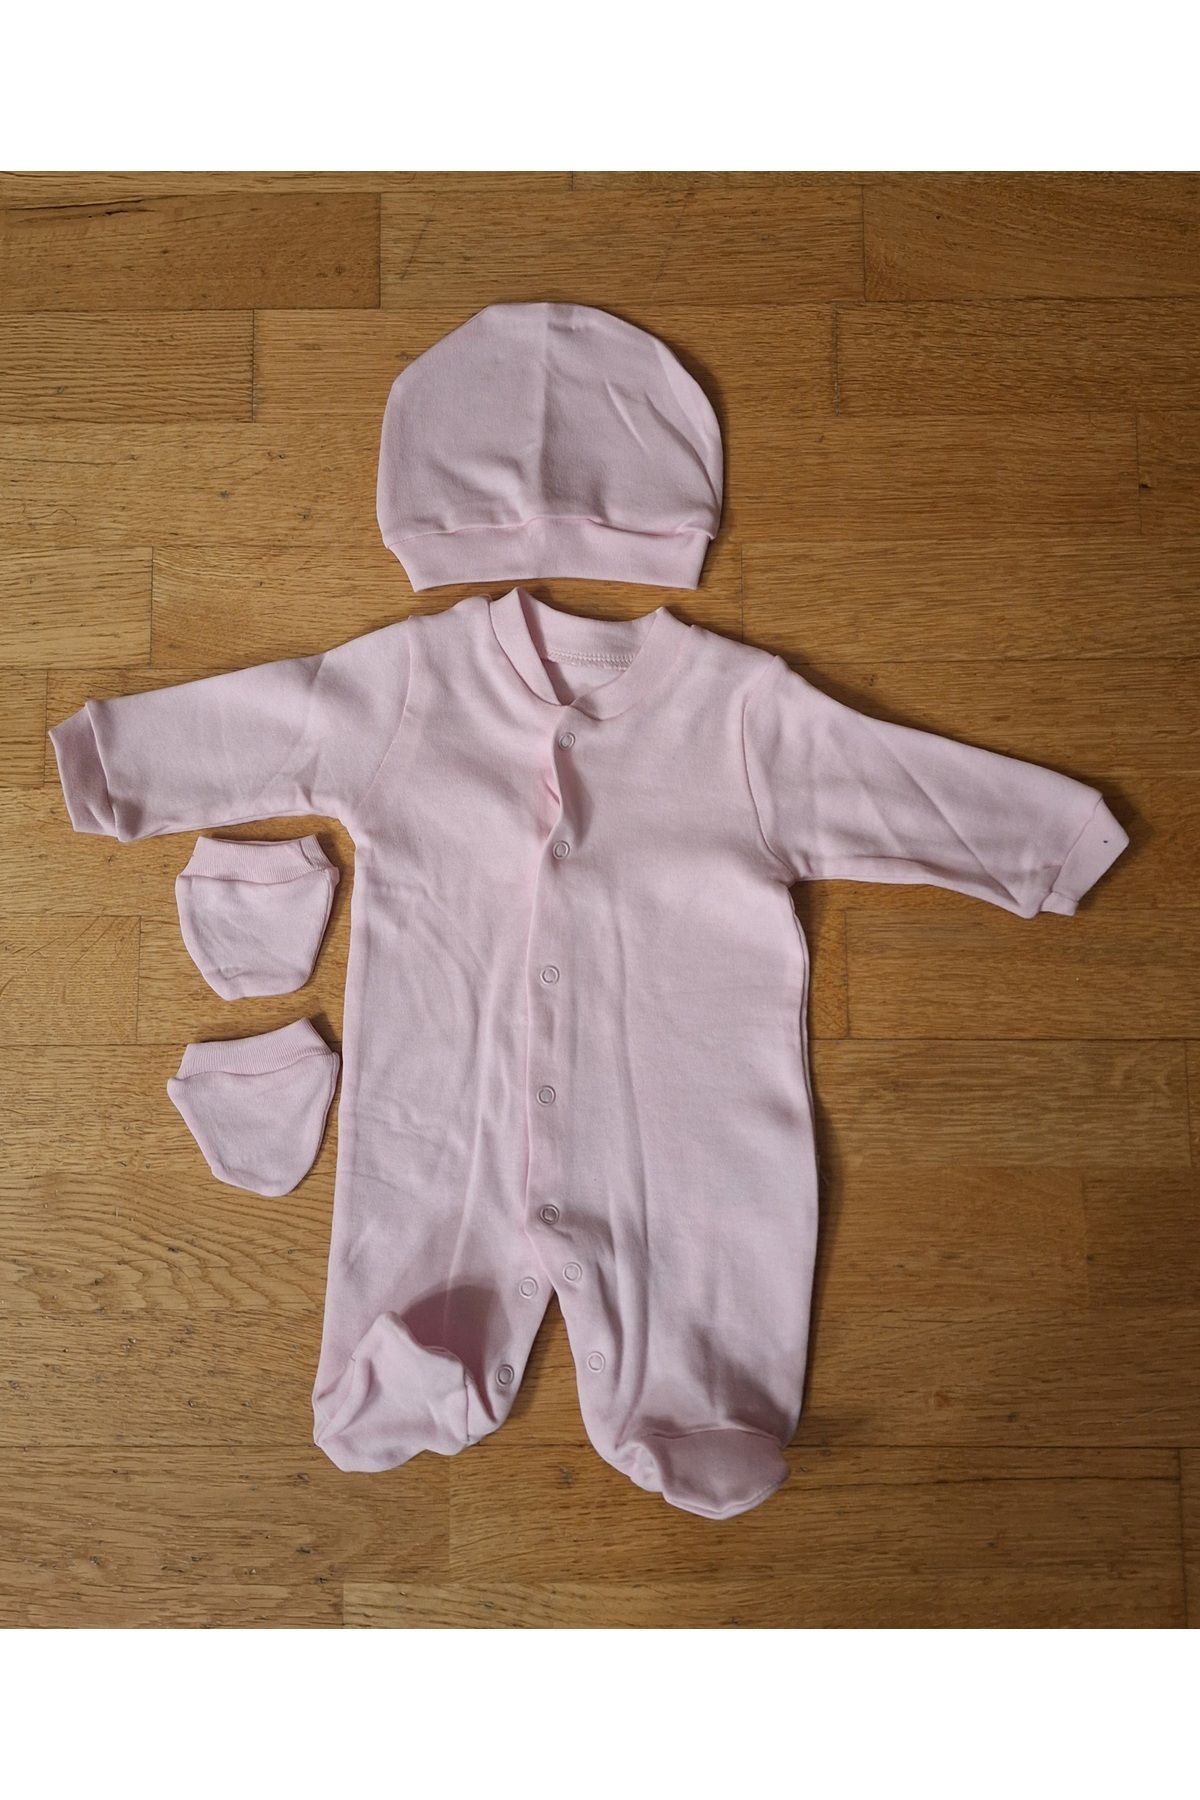 biyan collection Kız Erkek Bebek Şapkalı Eldivenli Tulum Seti Bebek Hediyelik Hastane Çıkışı Zıbın Takımı